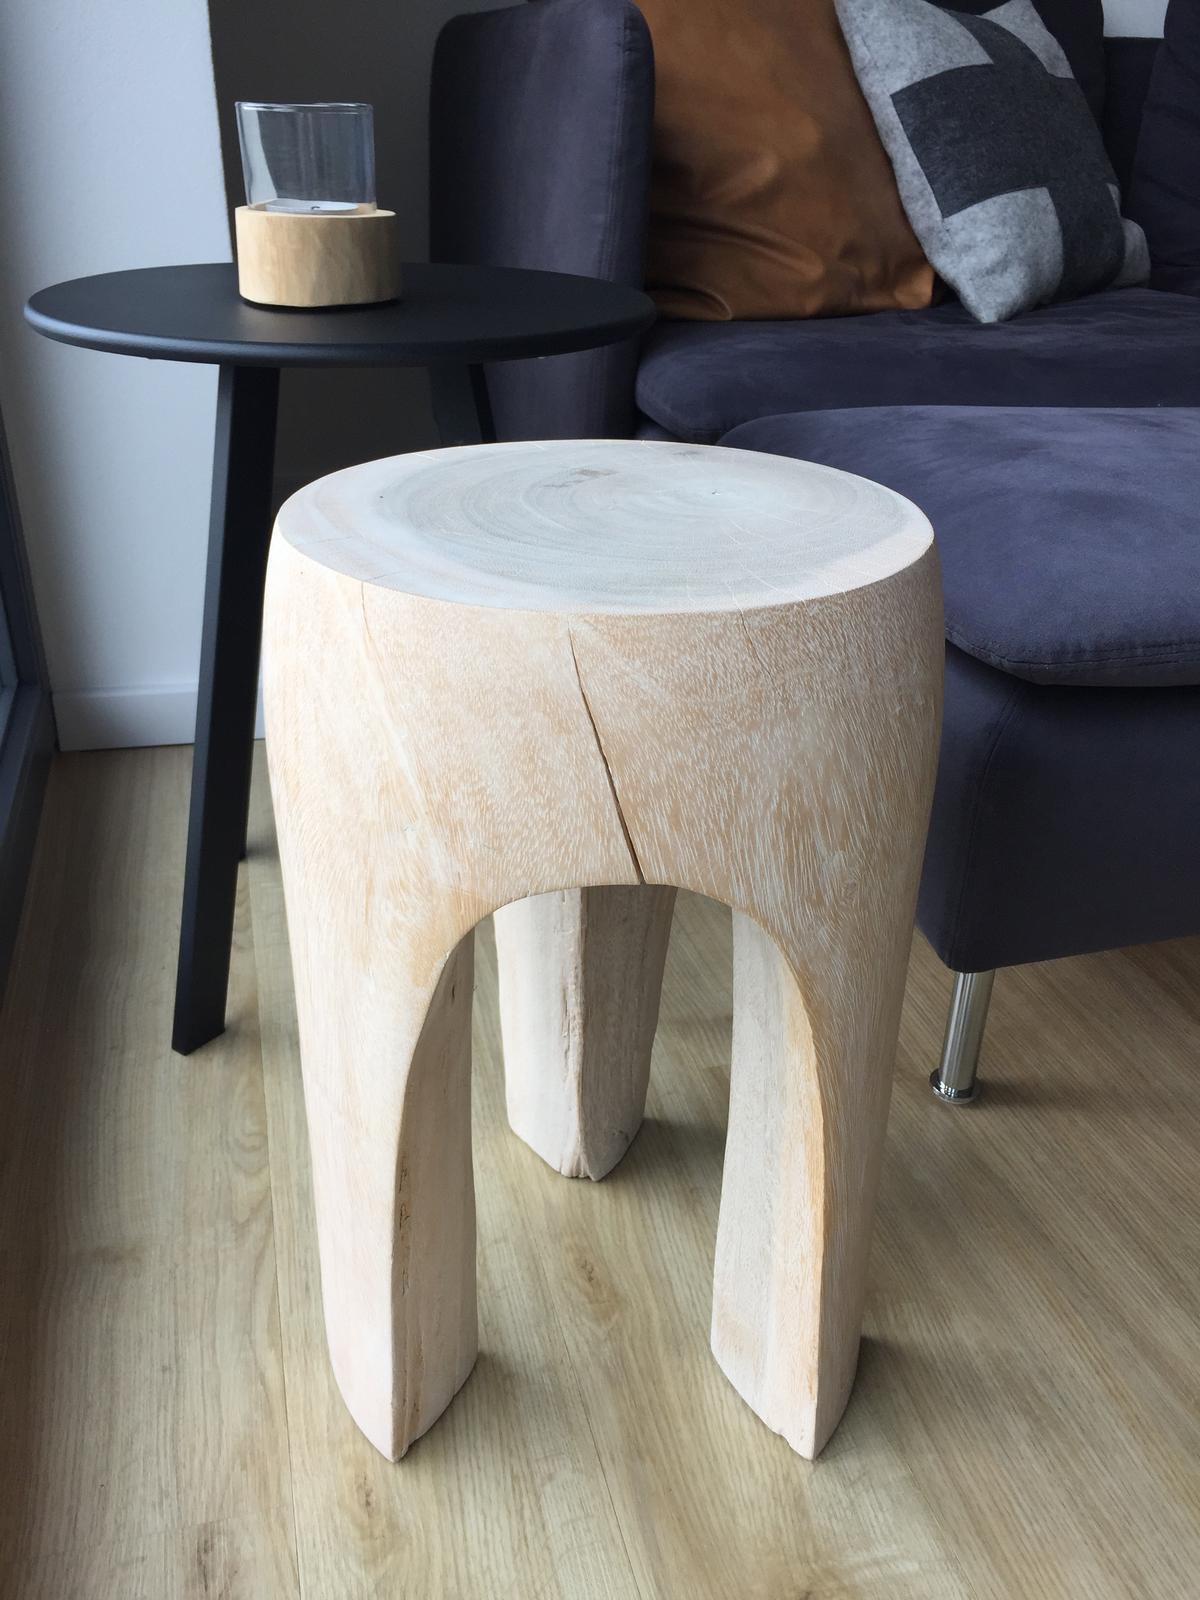 Designova drevena stolicka - Obrázek č. 2